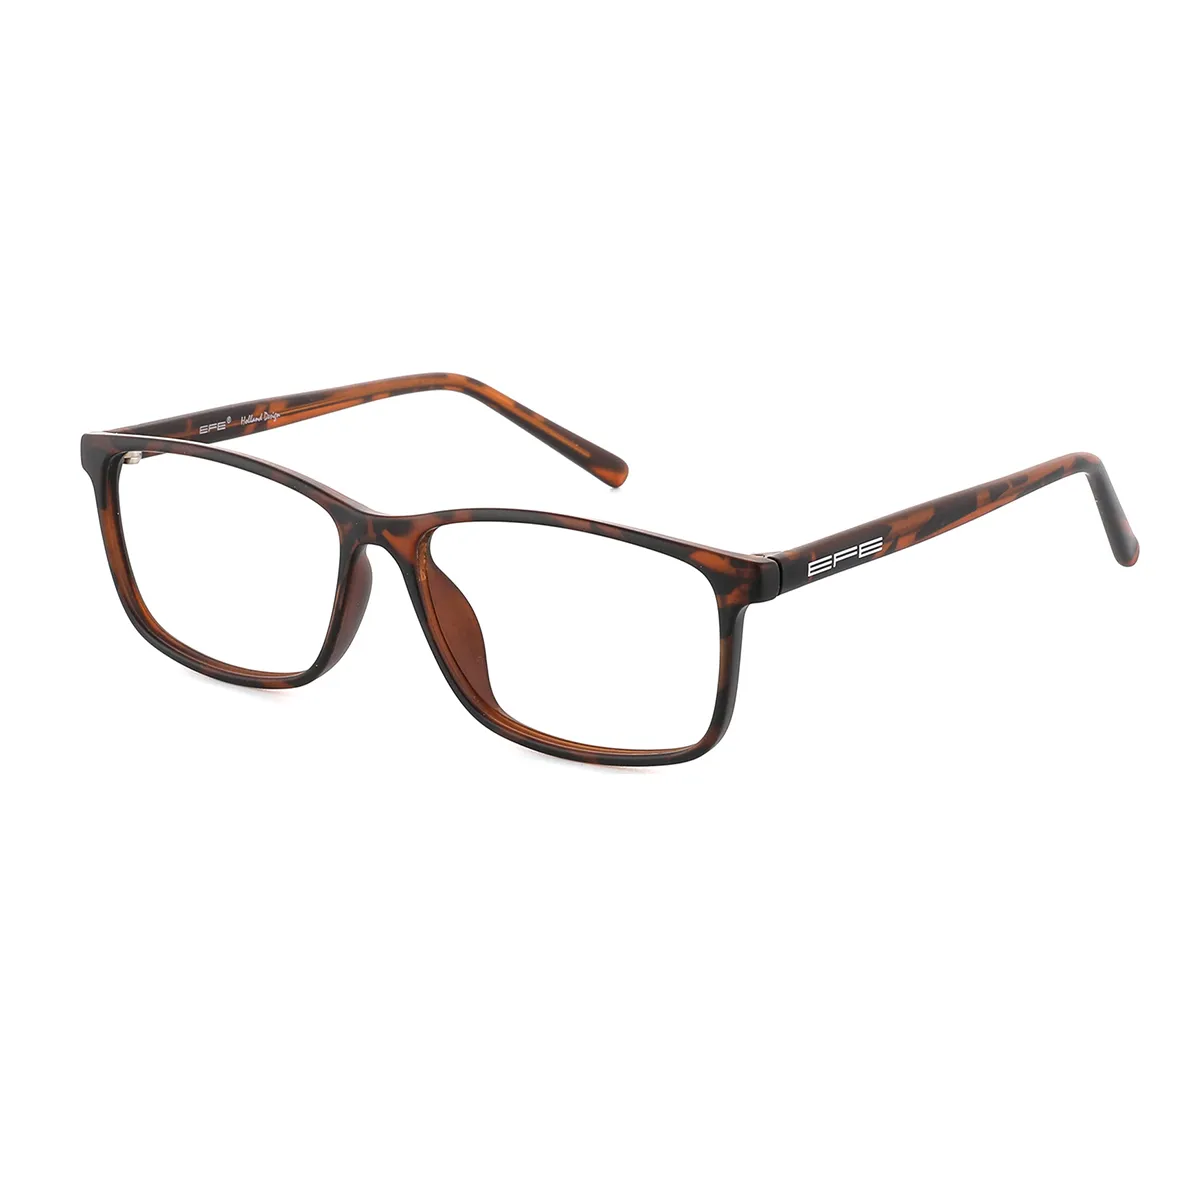 Grier - Rectangle Tortoiseshell Glasses for Men & Women - EFE